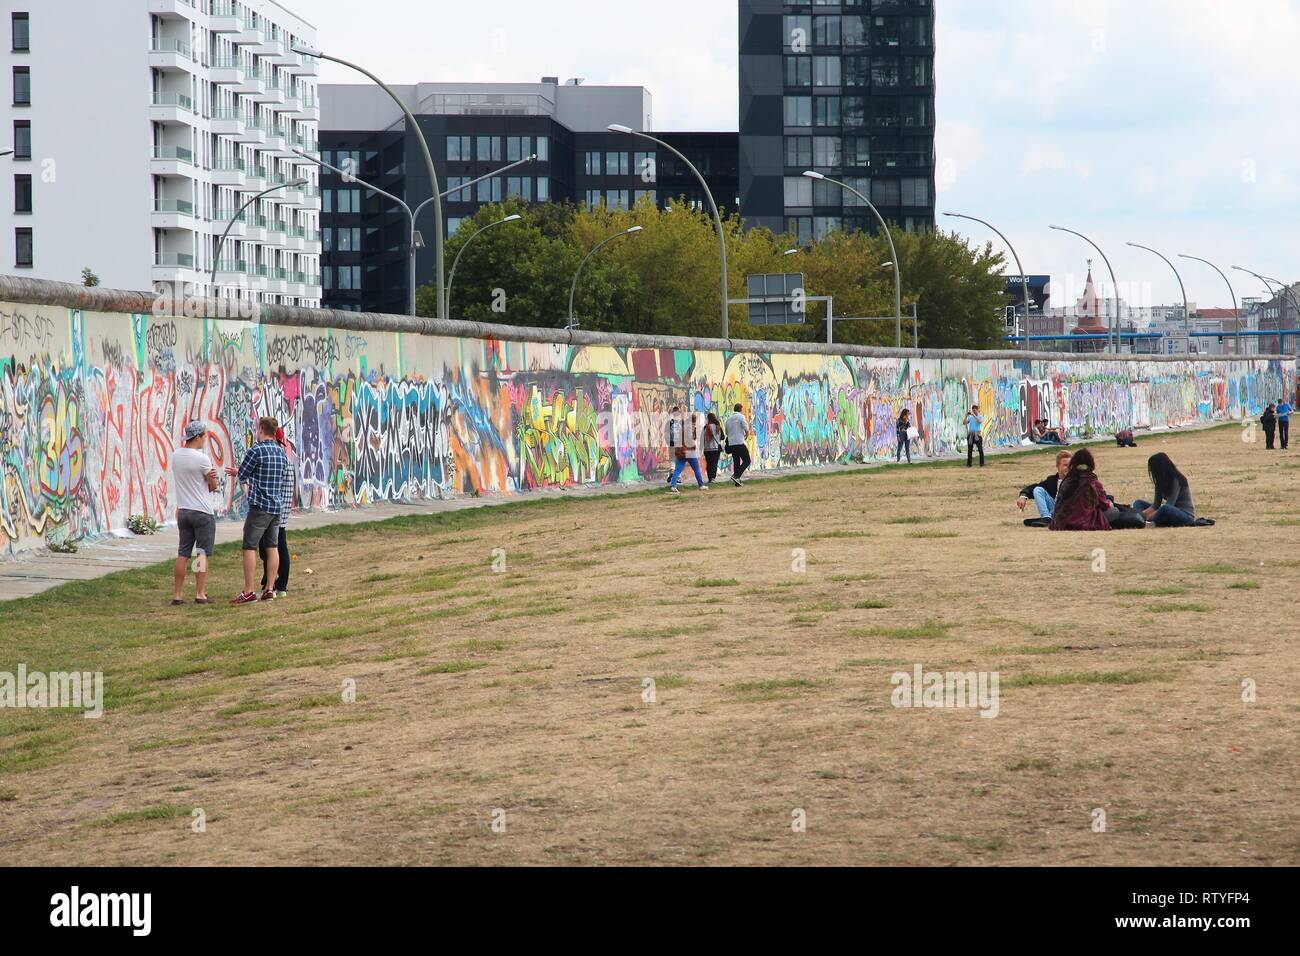 BERLIN, ALLEMAGNE - 26 août 2014 : personnes visitent le Mur de Berlin (Berliner Mauer). Rideau de fer emblématique de Berlin divisé la frontière dans les années 1961-1989. Banque D'Images